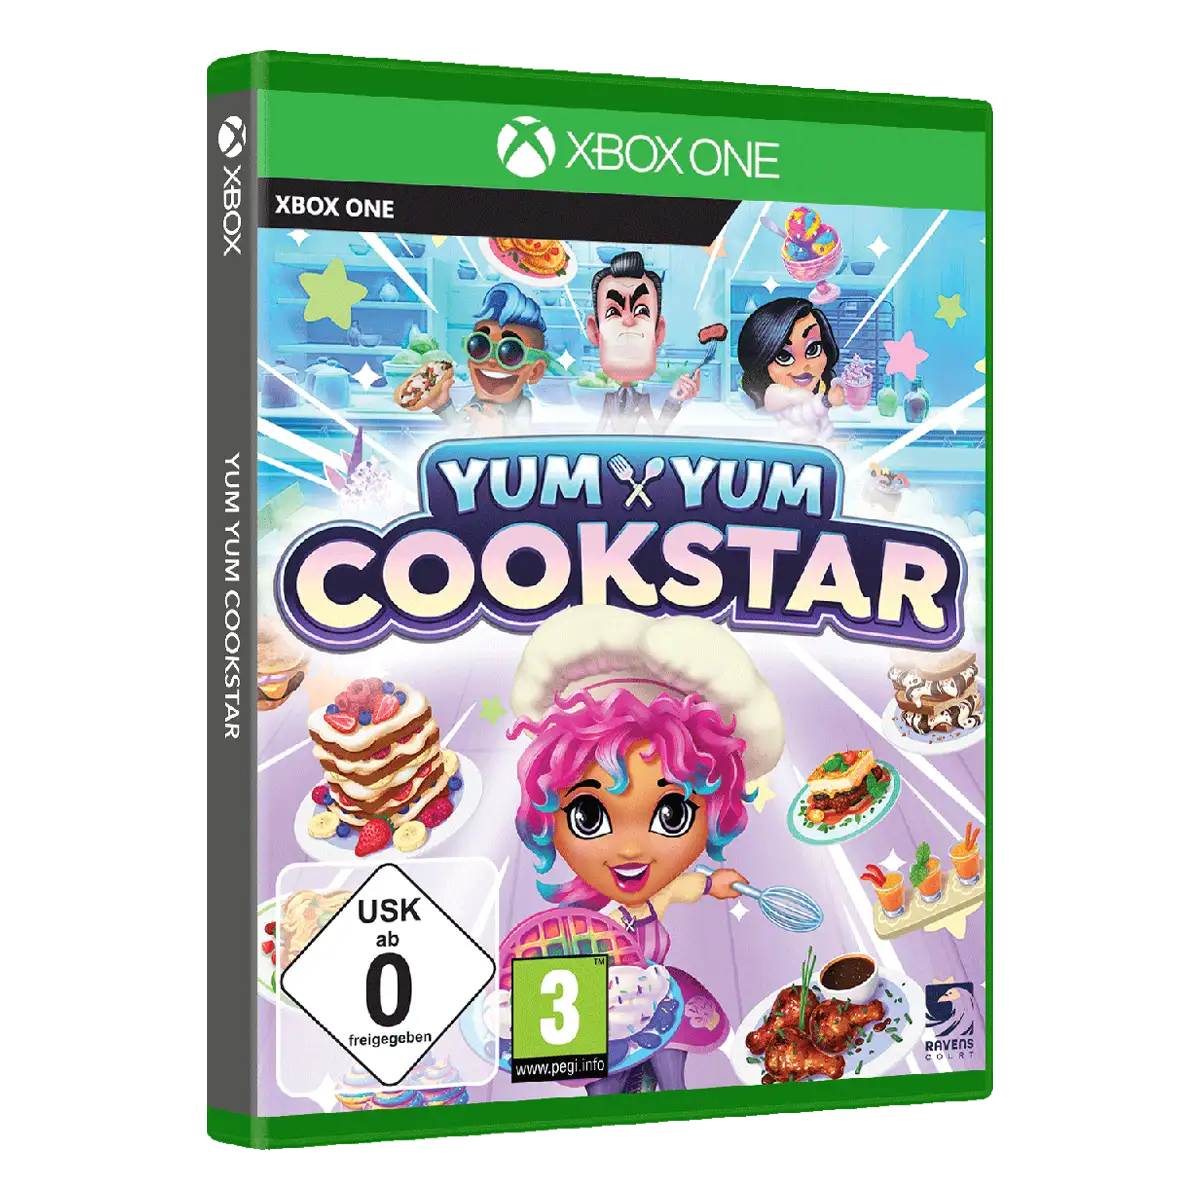 Yum Yum Cookstar (Xbox One) Image 2